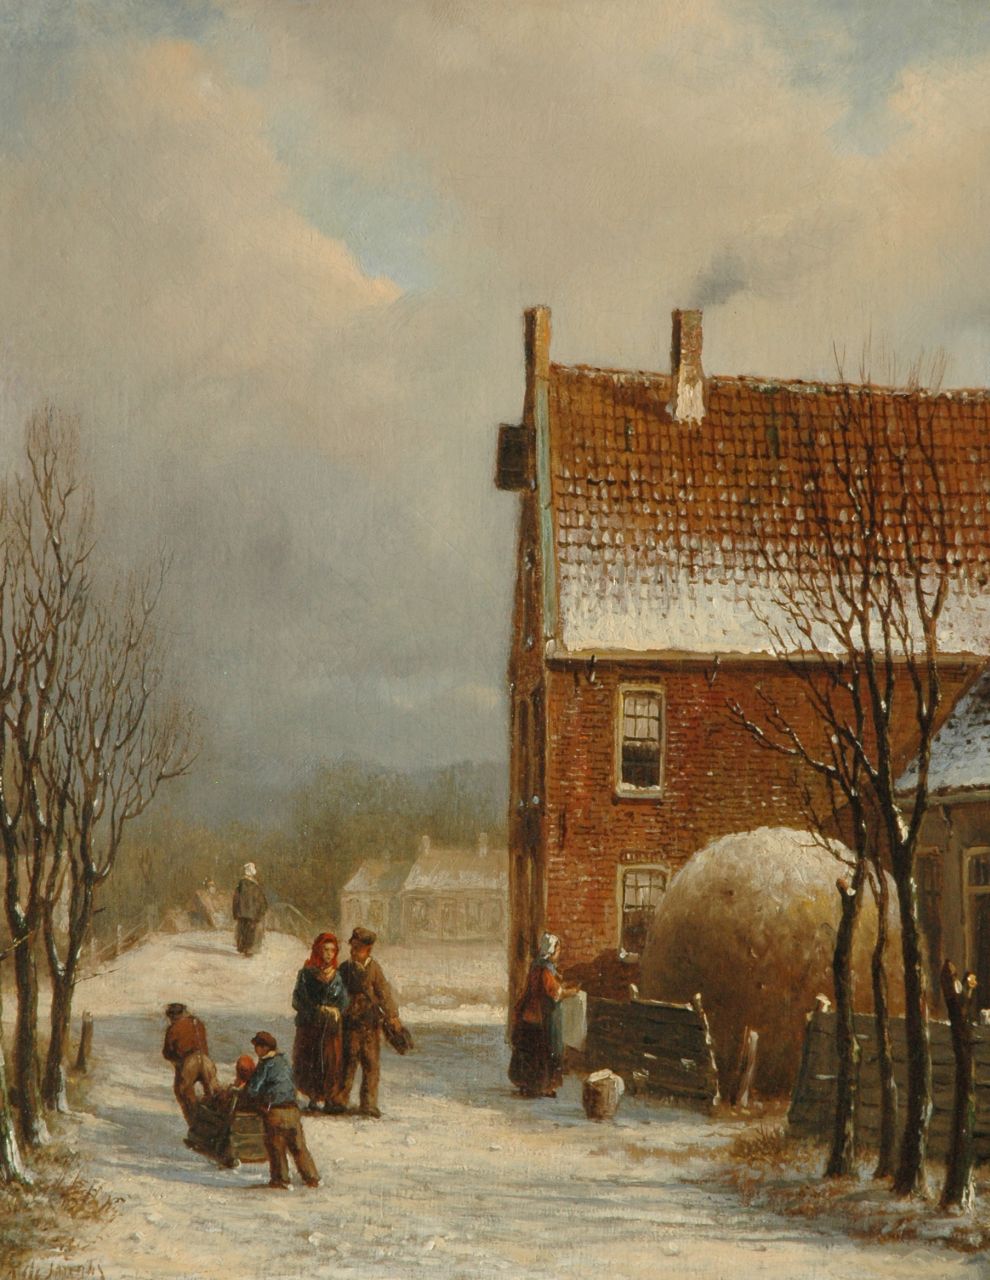 Jongh O.R. de | Oene Romkes de Jongh, A street scene in winter, oil on canvas 36.5 x 29.2 cm, signed l.l.